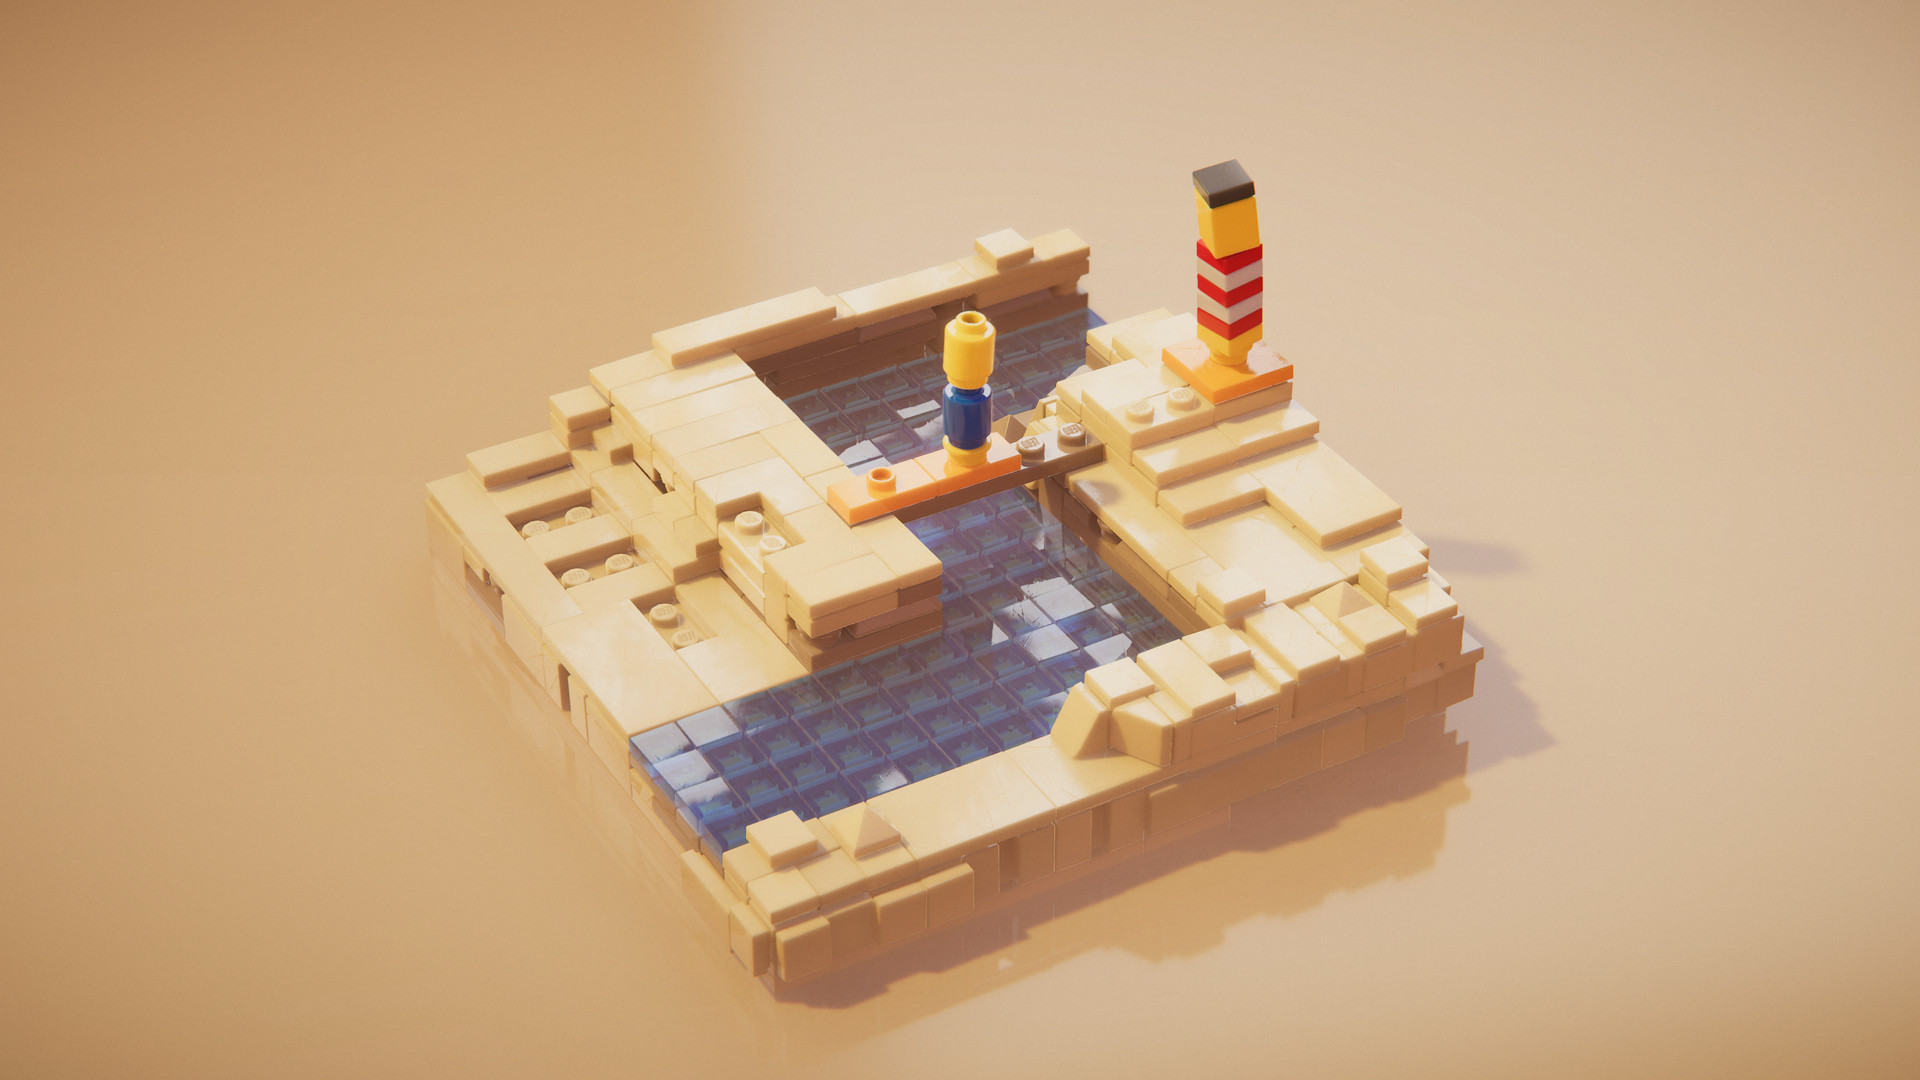 LEGO Builder's Journey Steam Altergift